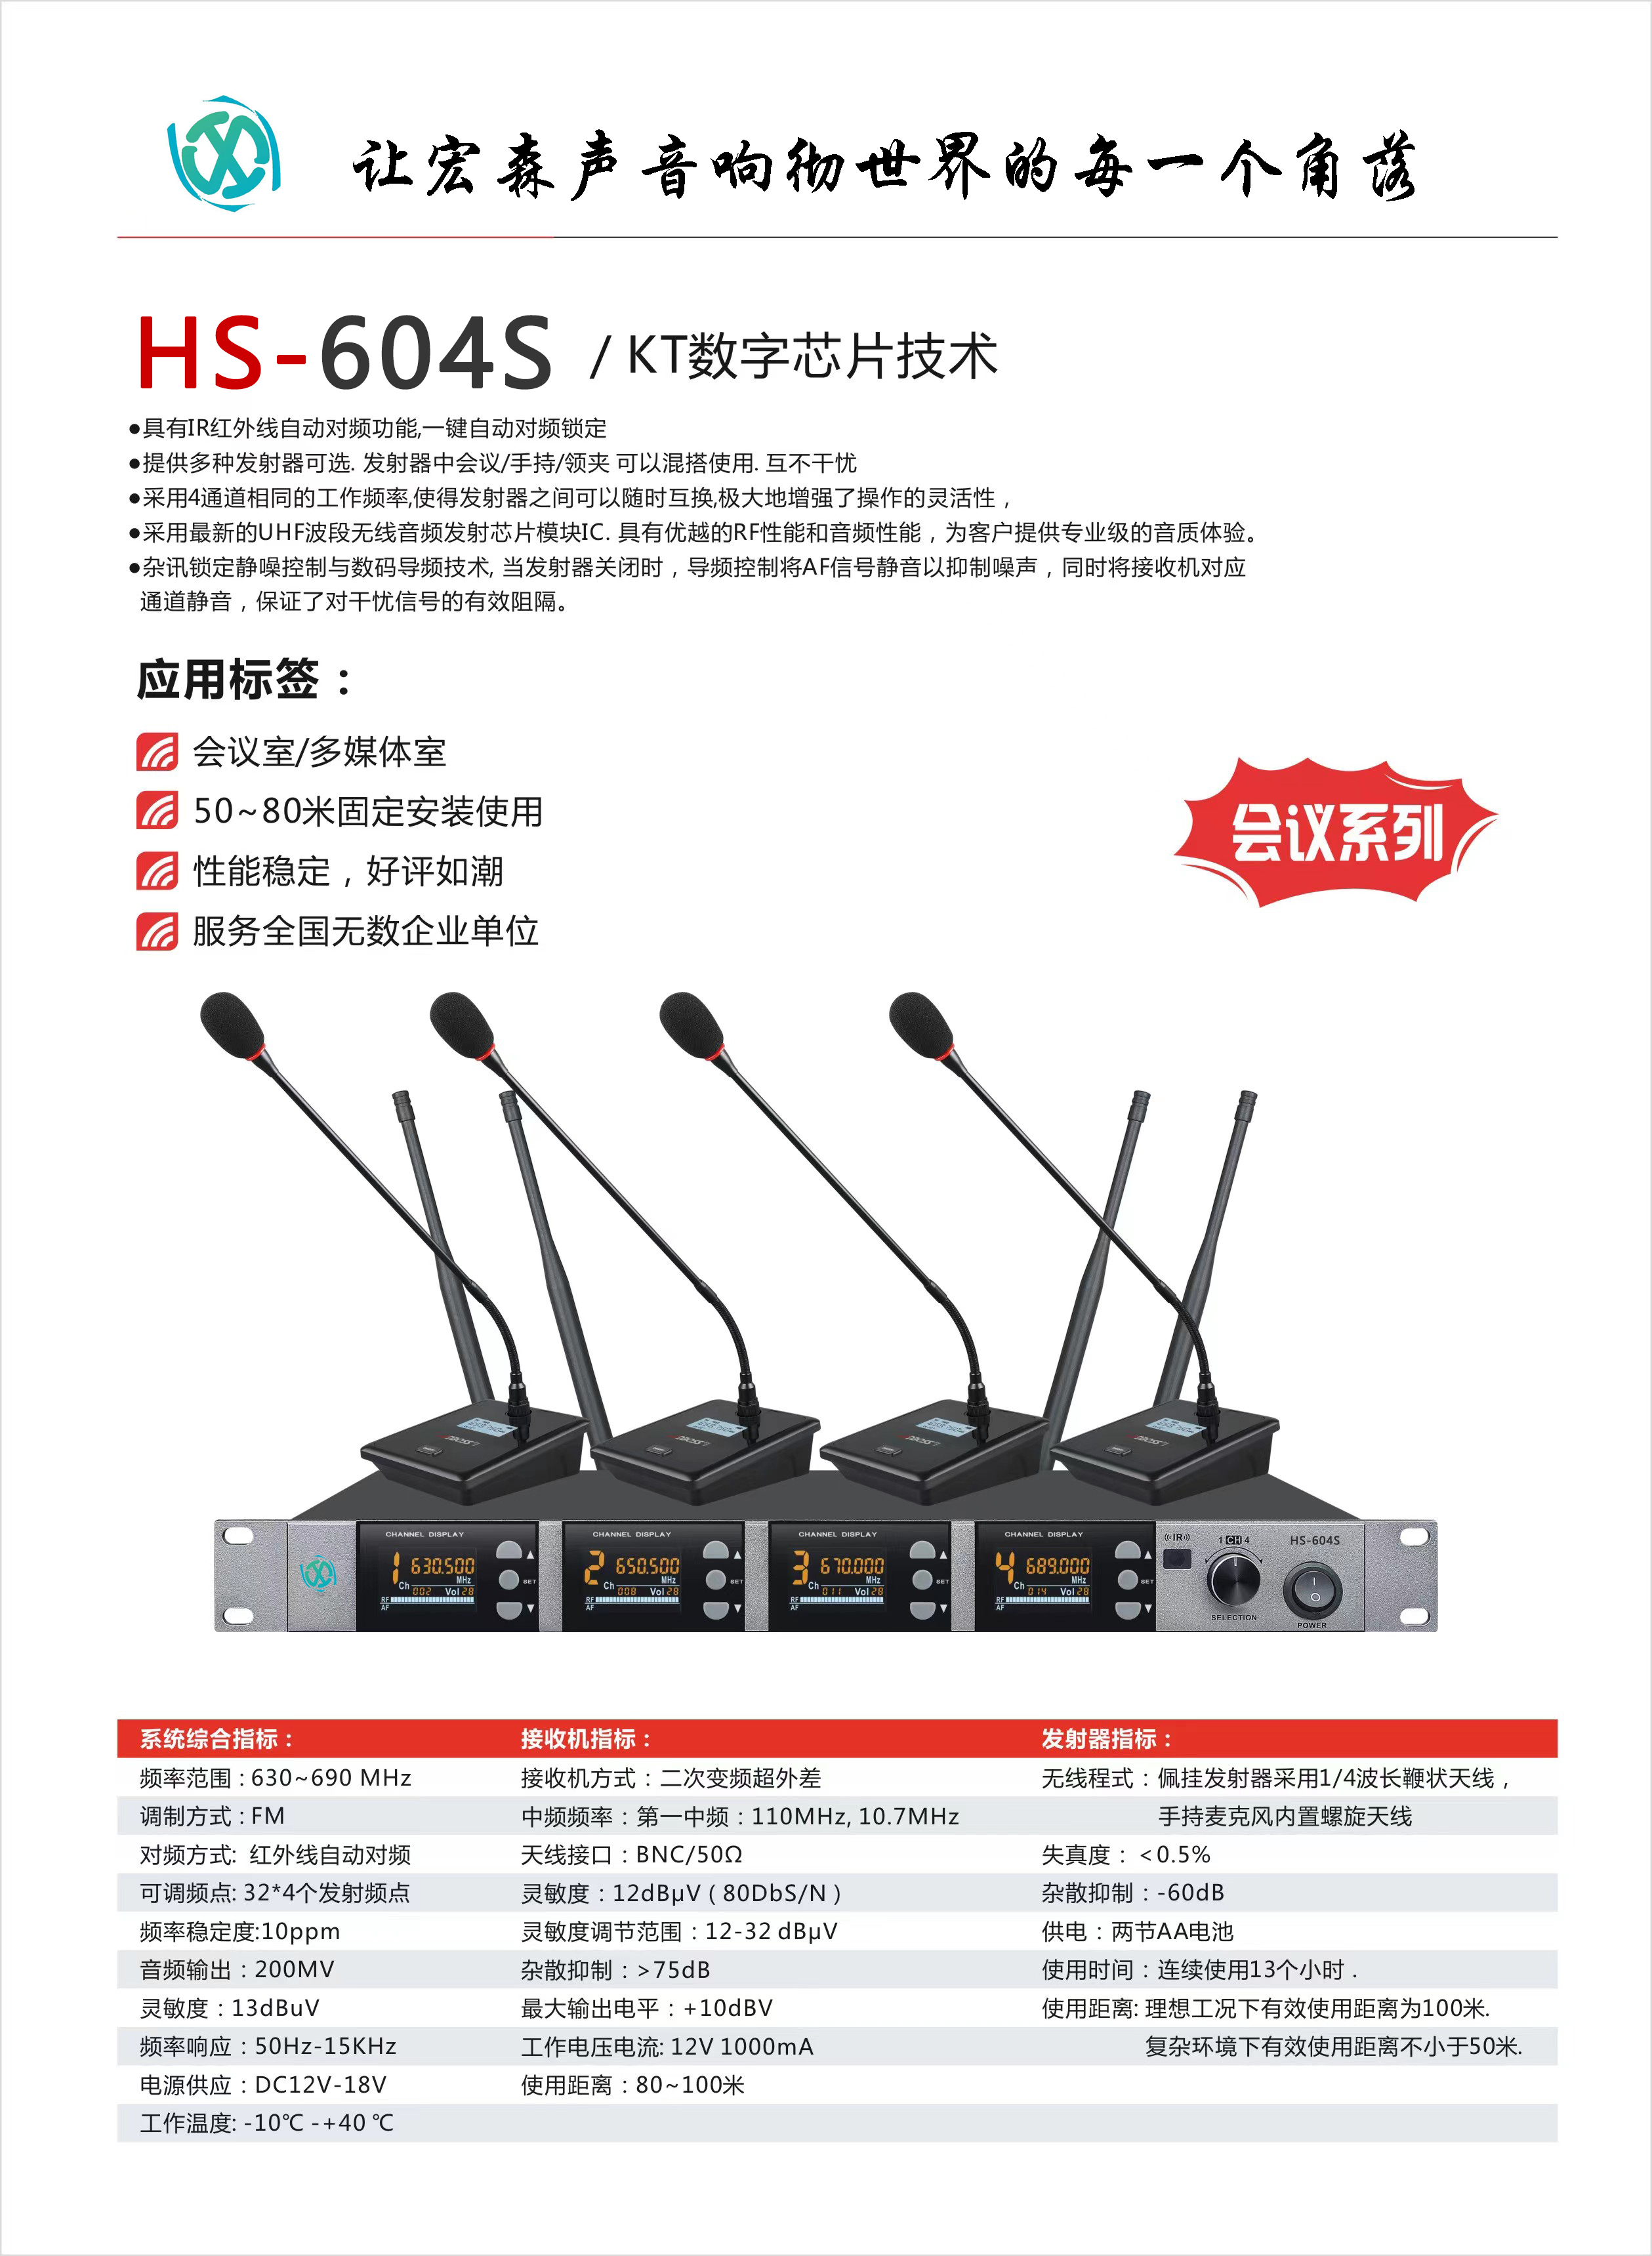 HS-604S